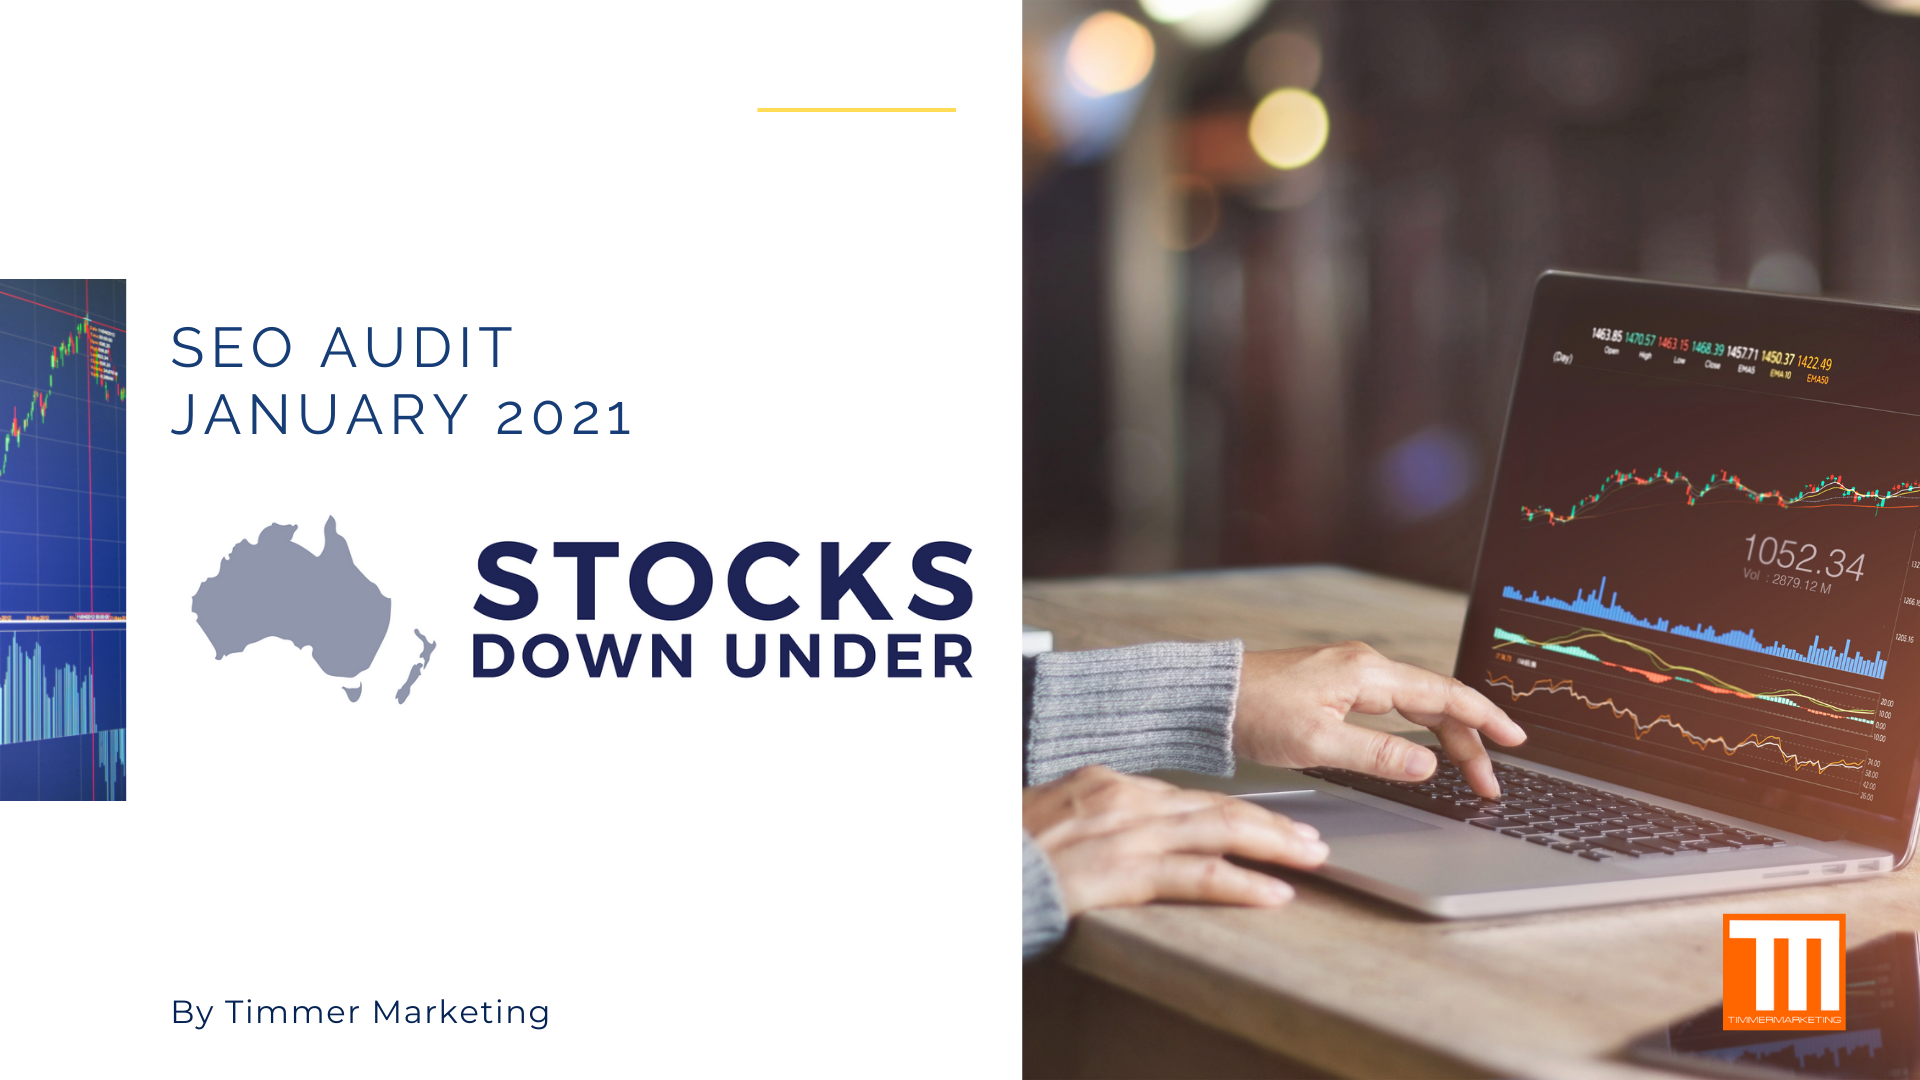 Stocks Down Under